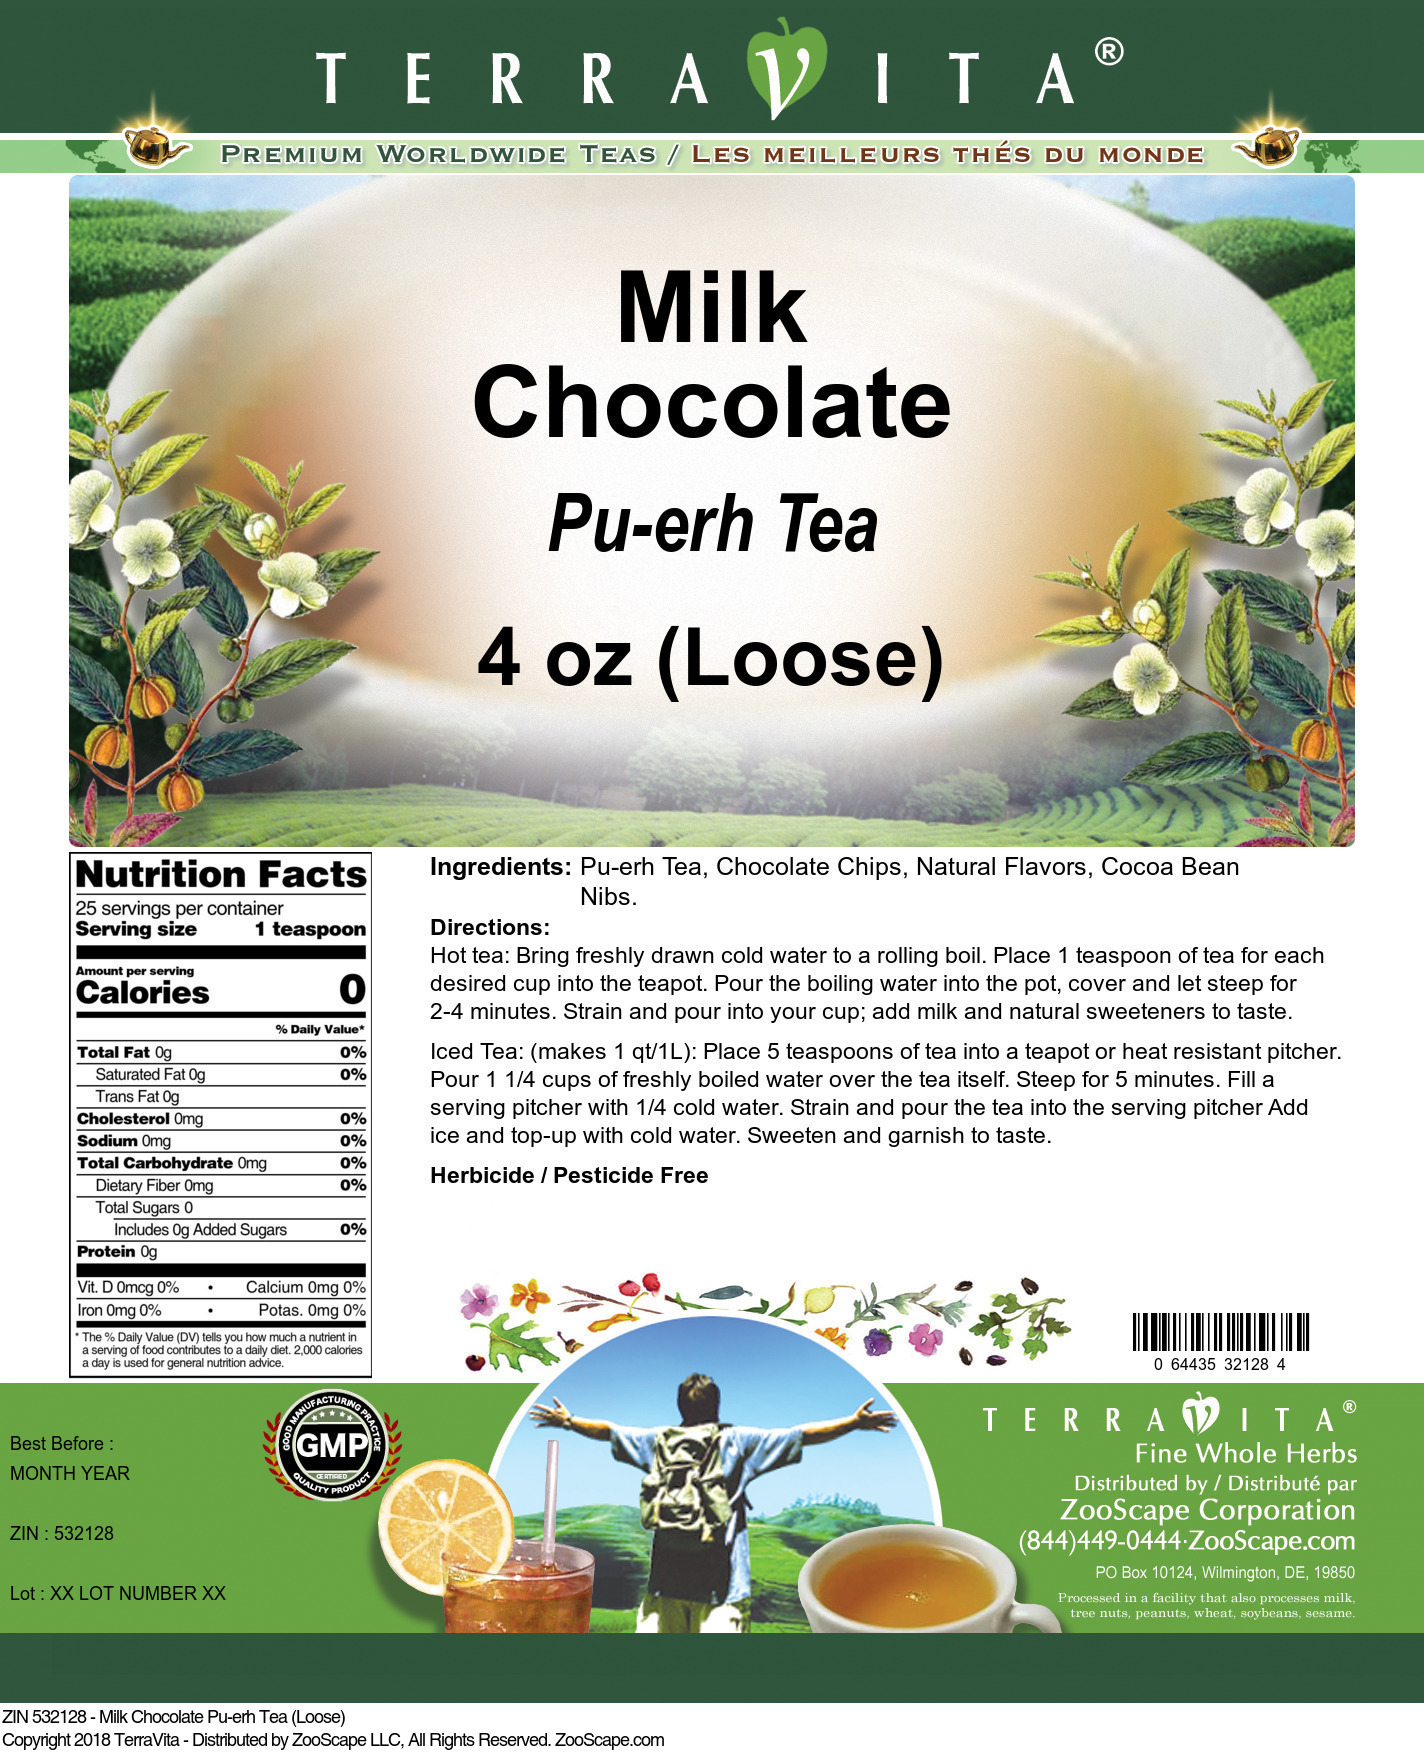 Milk Chocolate Pu-erh Tea (Loose) - Label